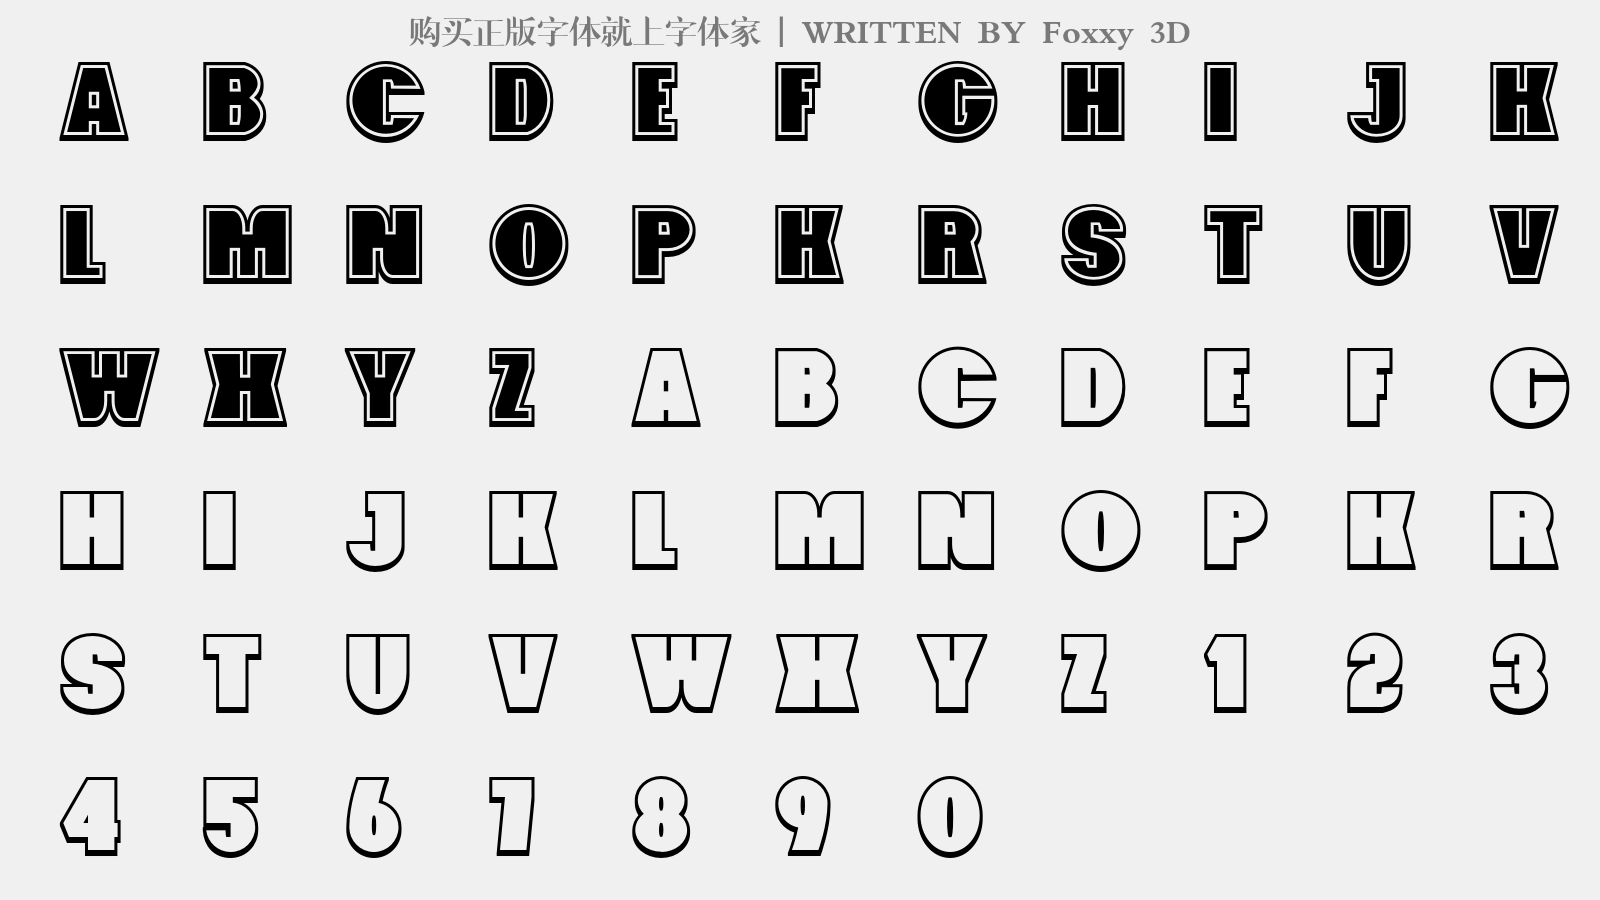 Foxxy 3D - 大写字母/小写字母/数字